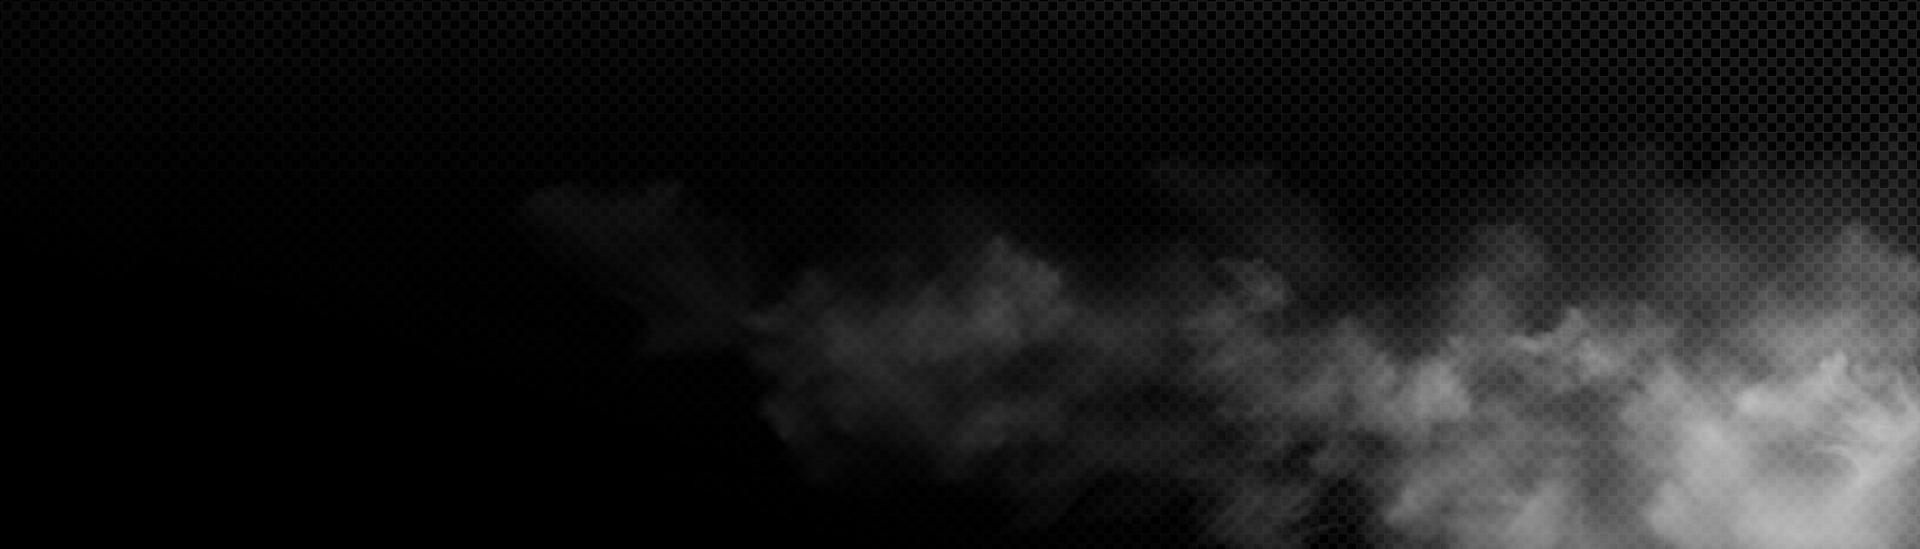 fumée réaliste, nuages blancs sur fond noir vecteur